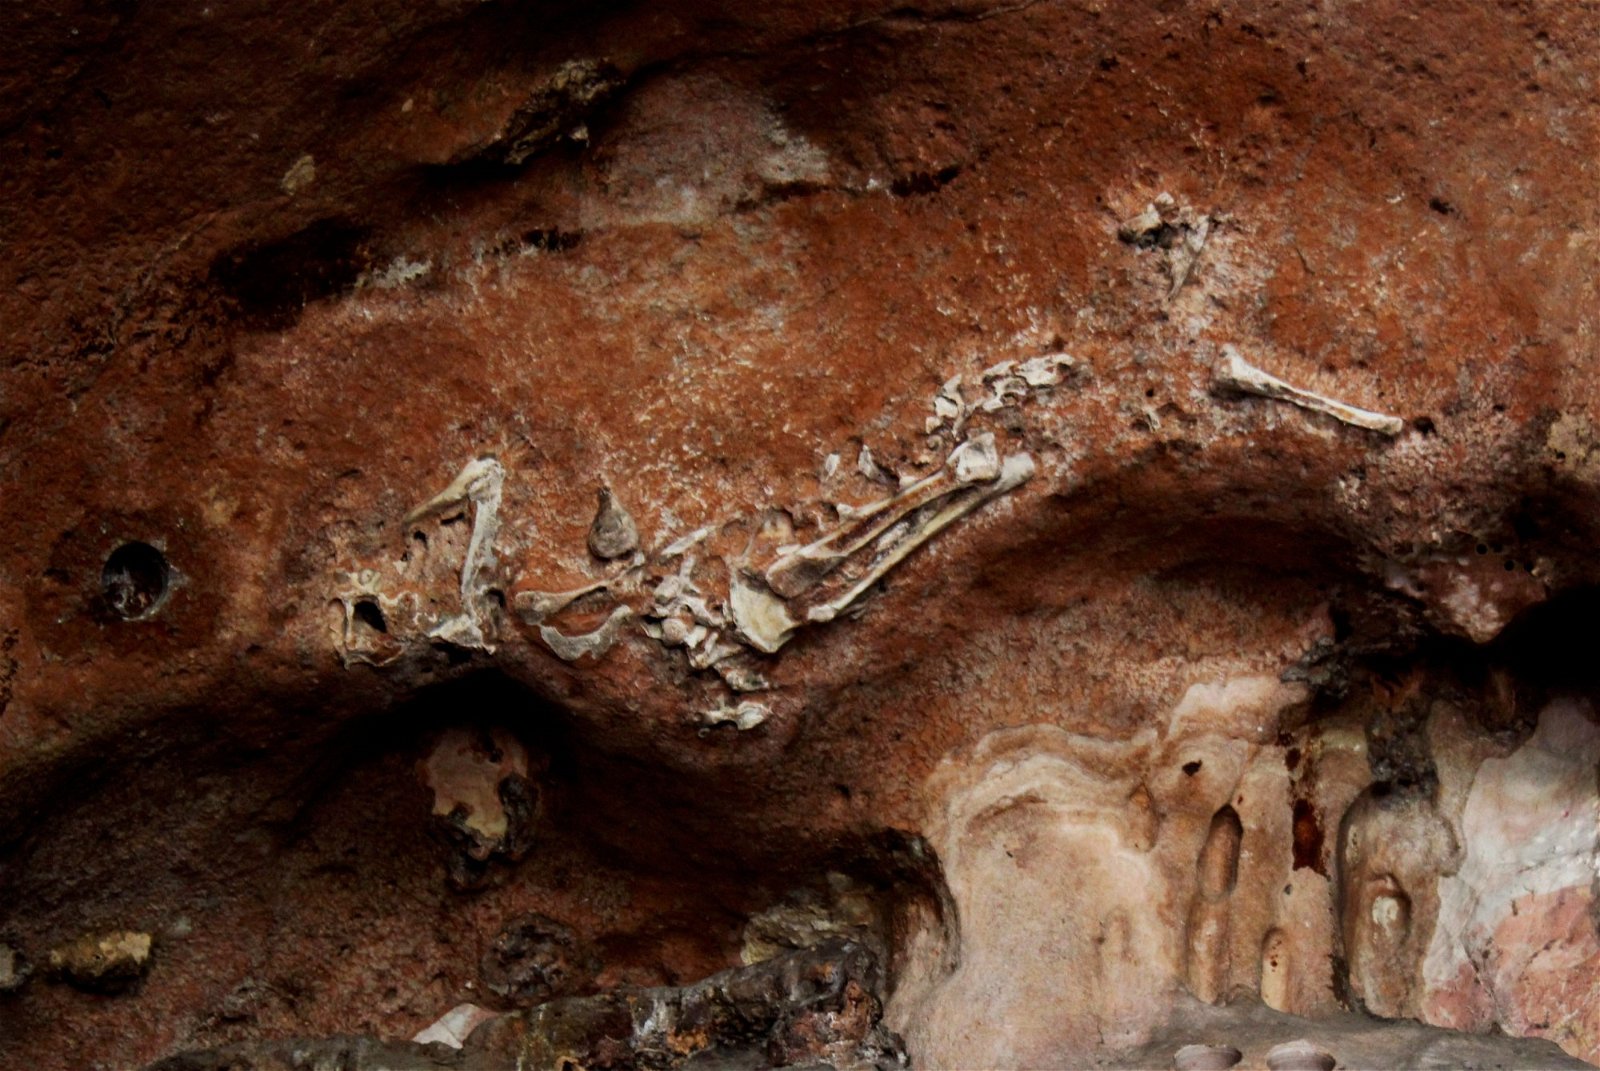 位处金龙洞洞顶的“老虎”化石曾吸引游客到访观赏，州政府如今为了让专才专注研究，暂时关闭该洞，不开放参观。